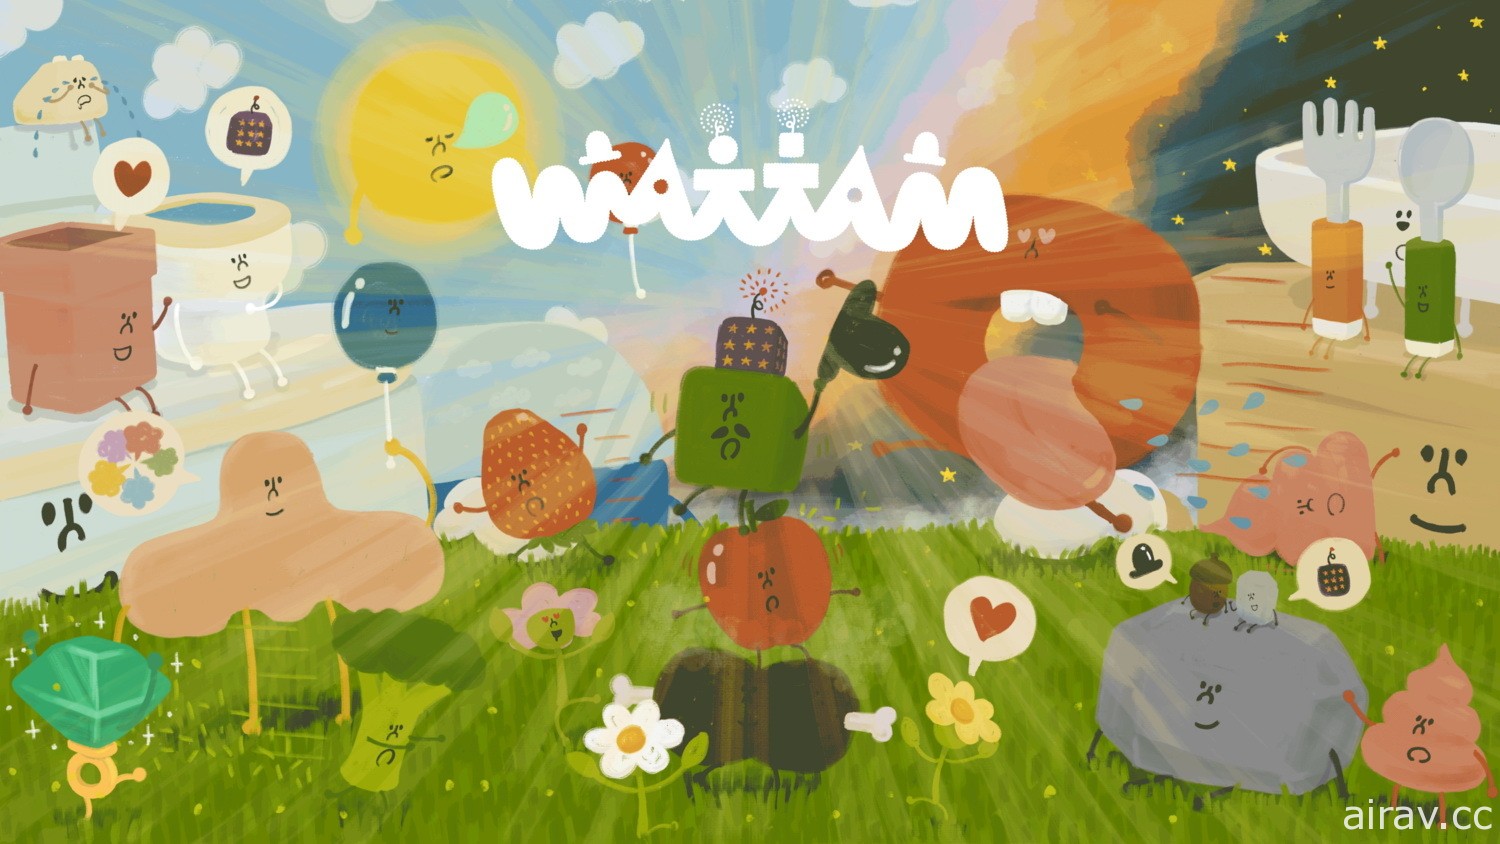 讲述欢乐新作《Wattam》今日登陆 Steam　与马桶、寿司等交朋友